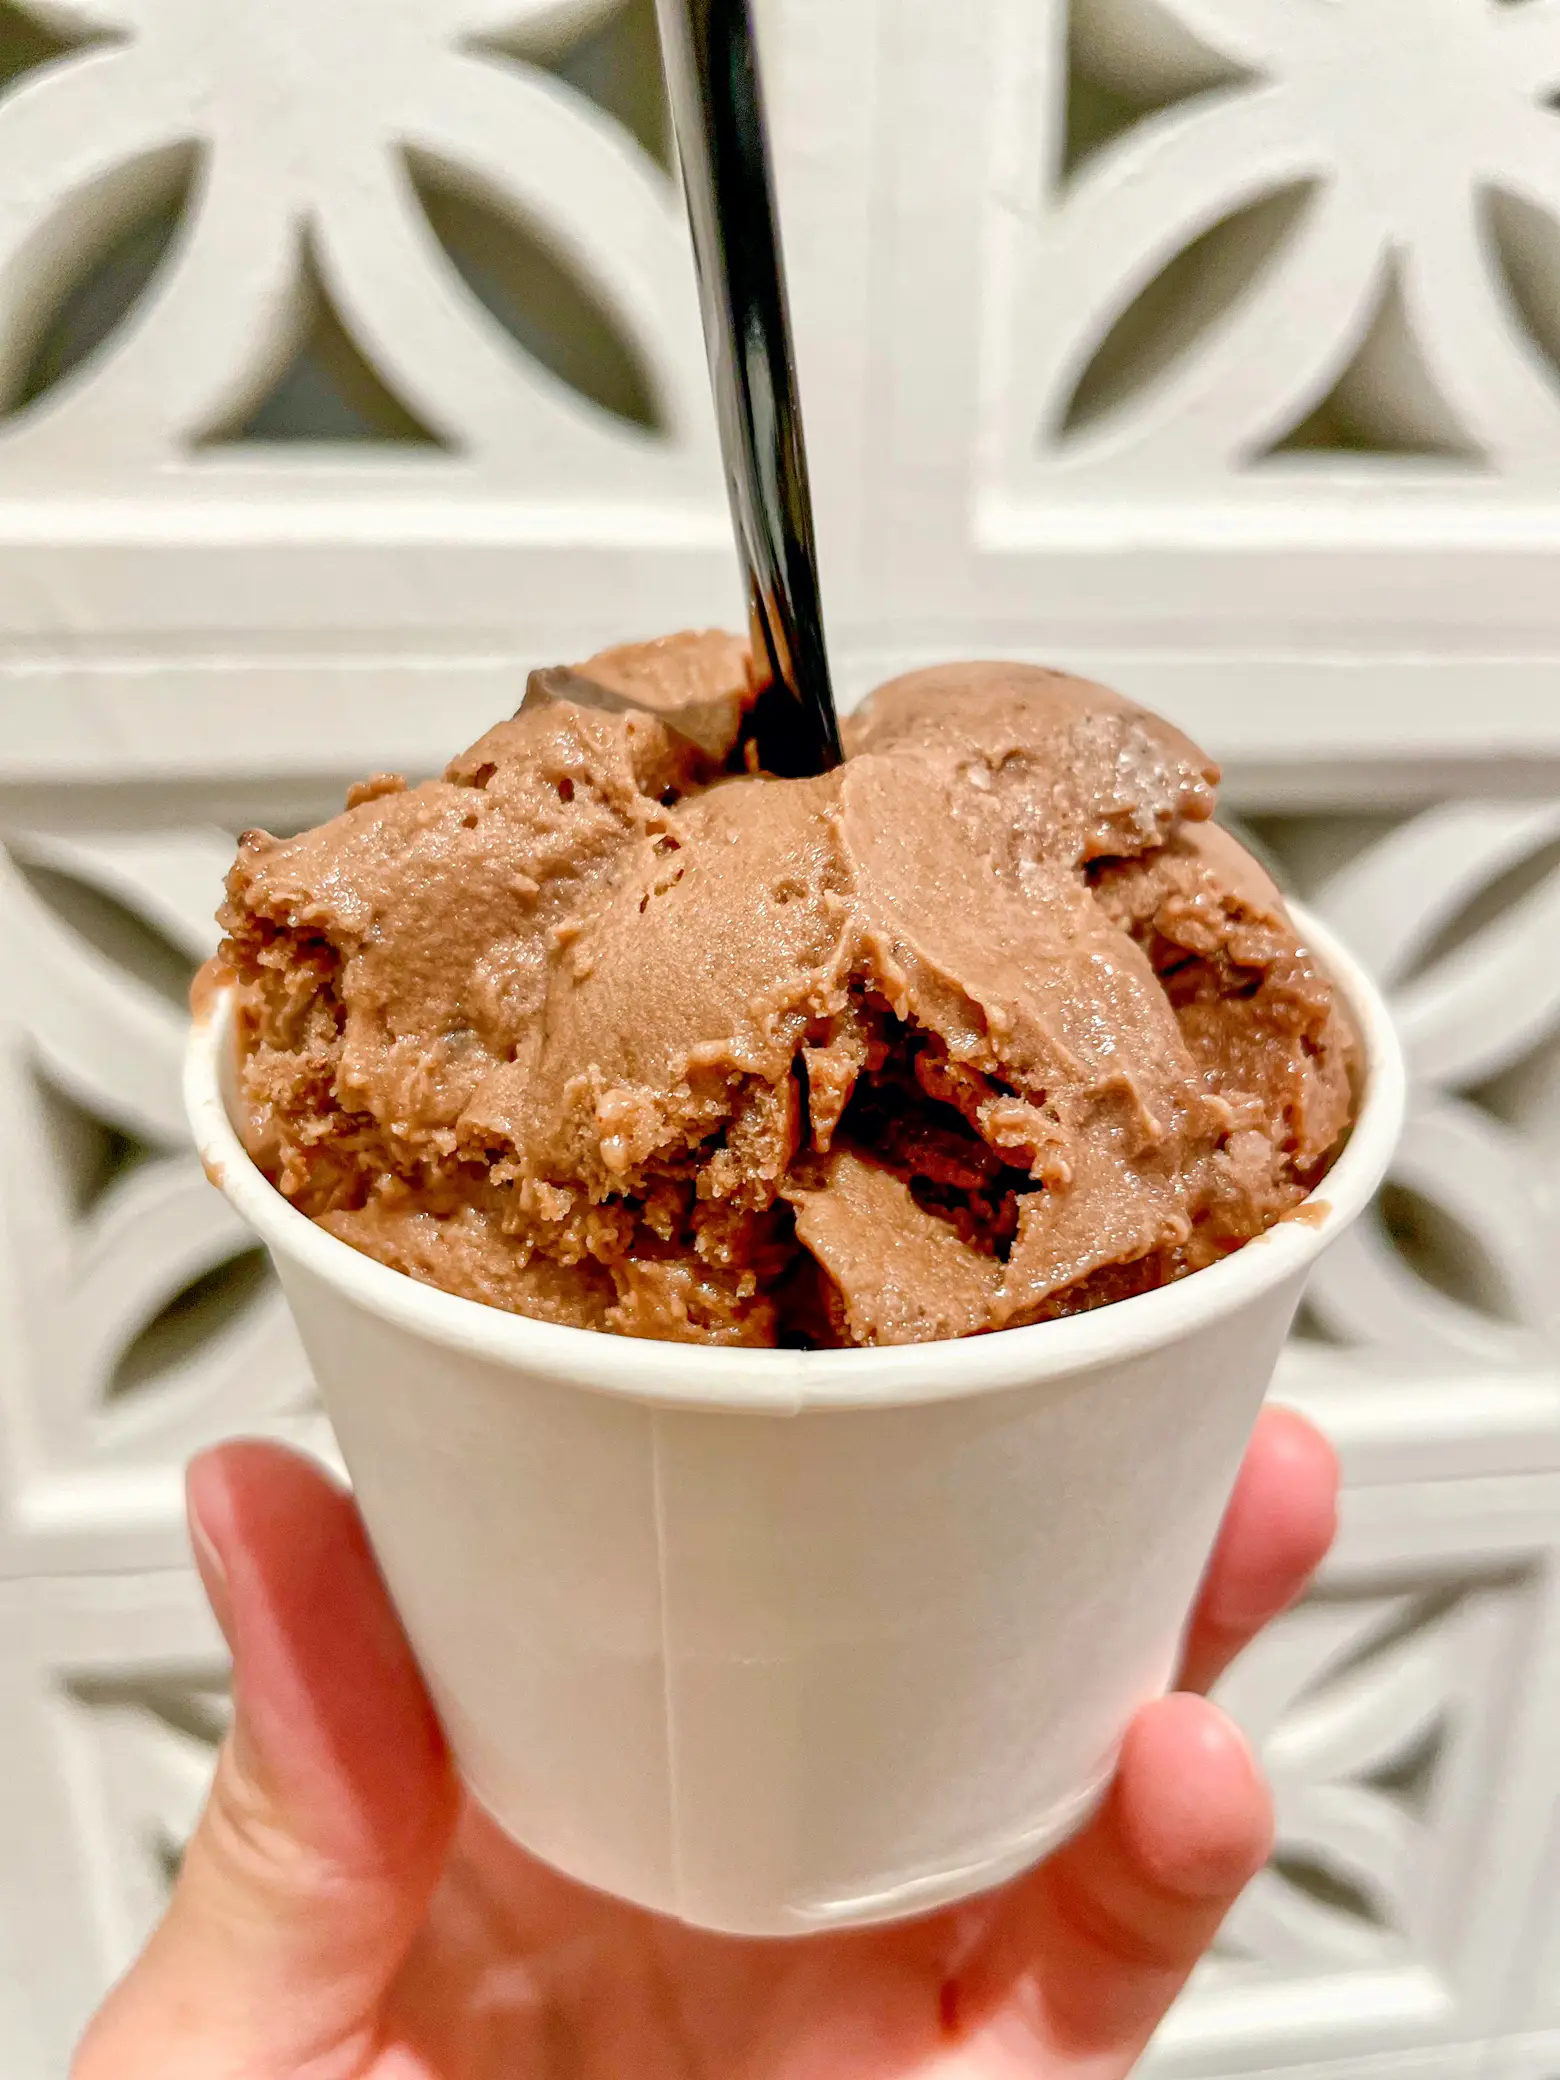 162 Double Scoop Ice Cream Cone Stock Photos - Free & Royalty-Free